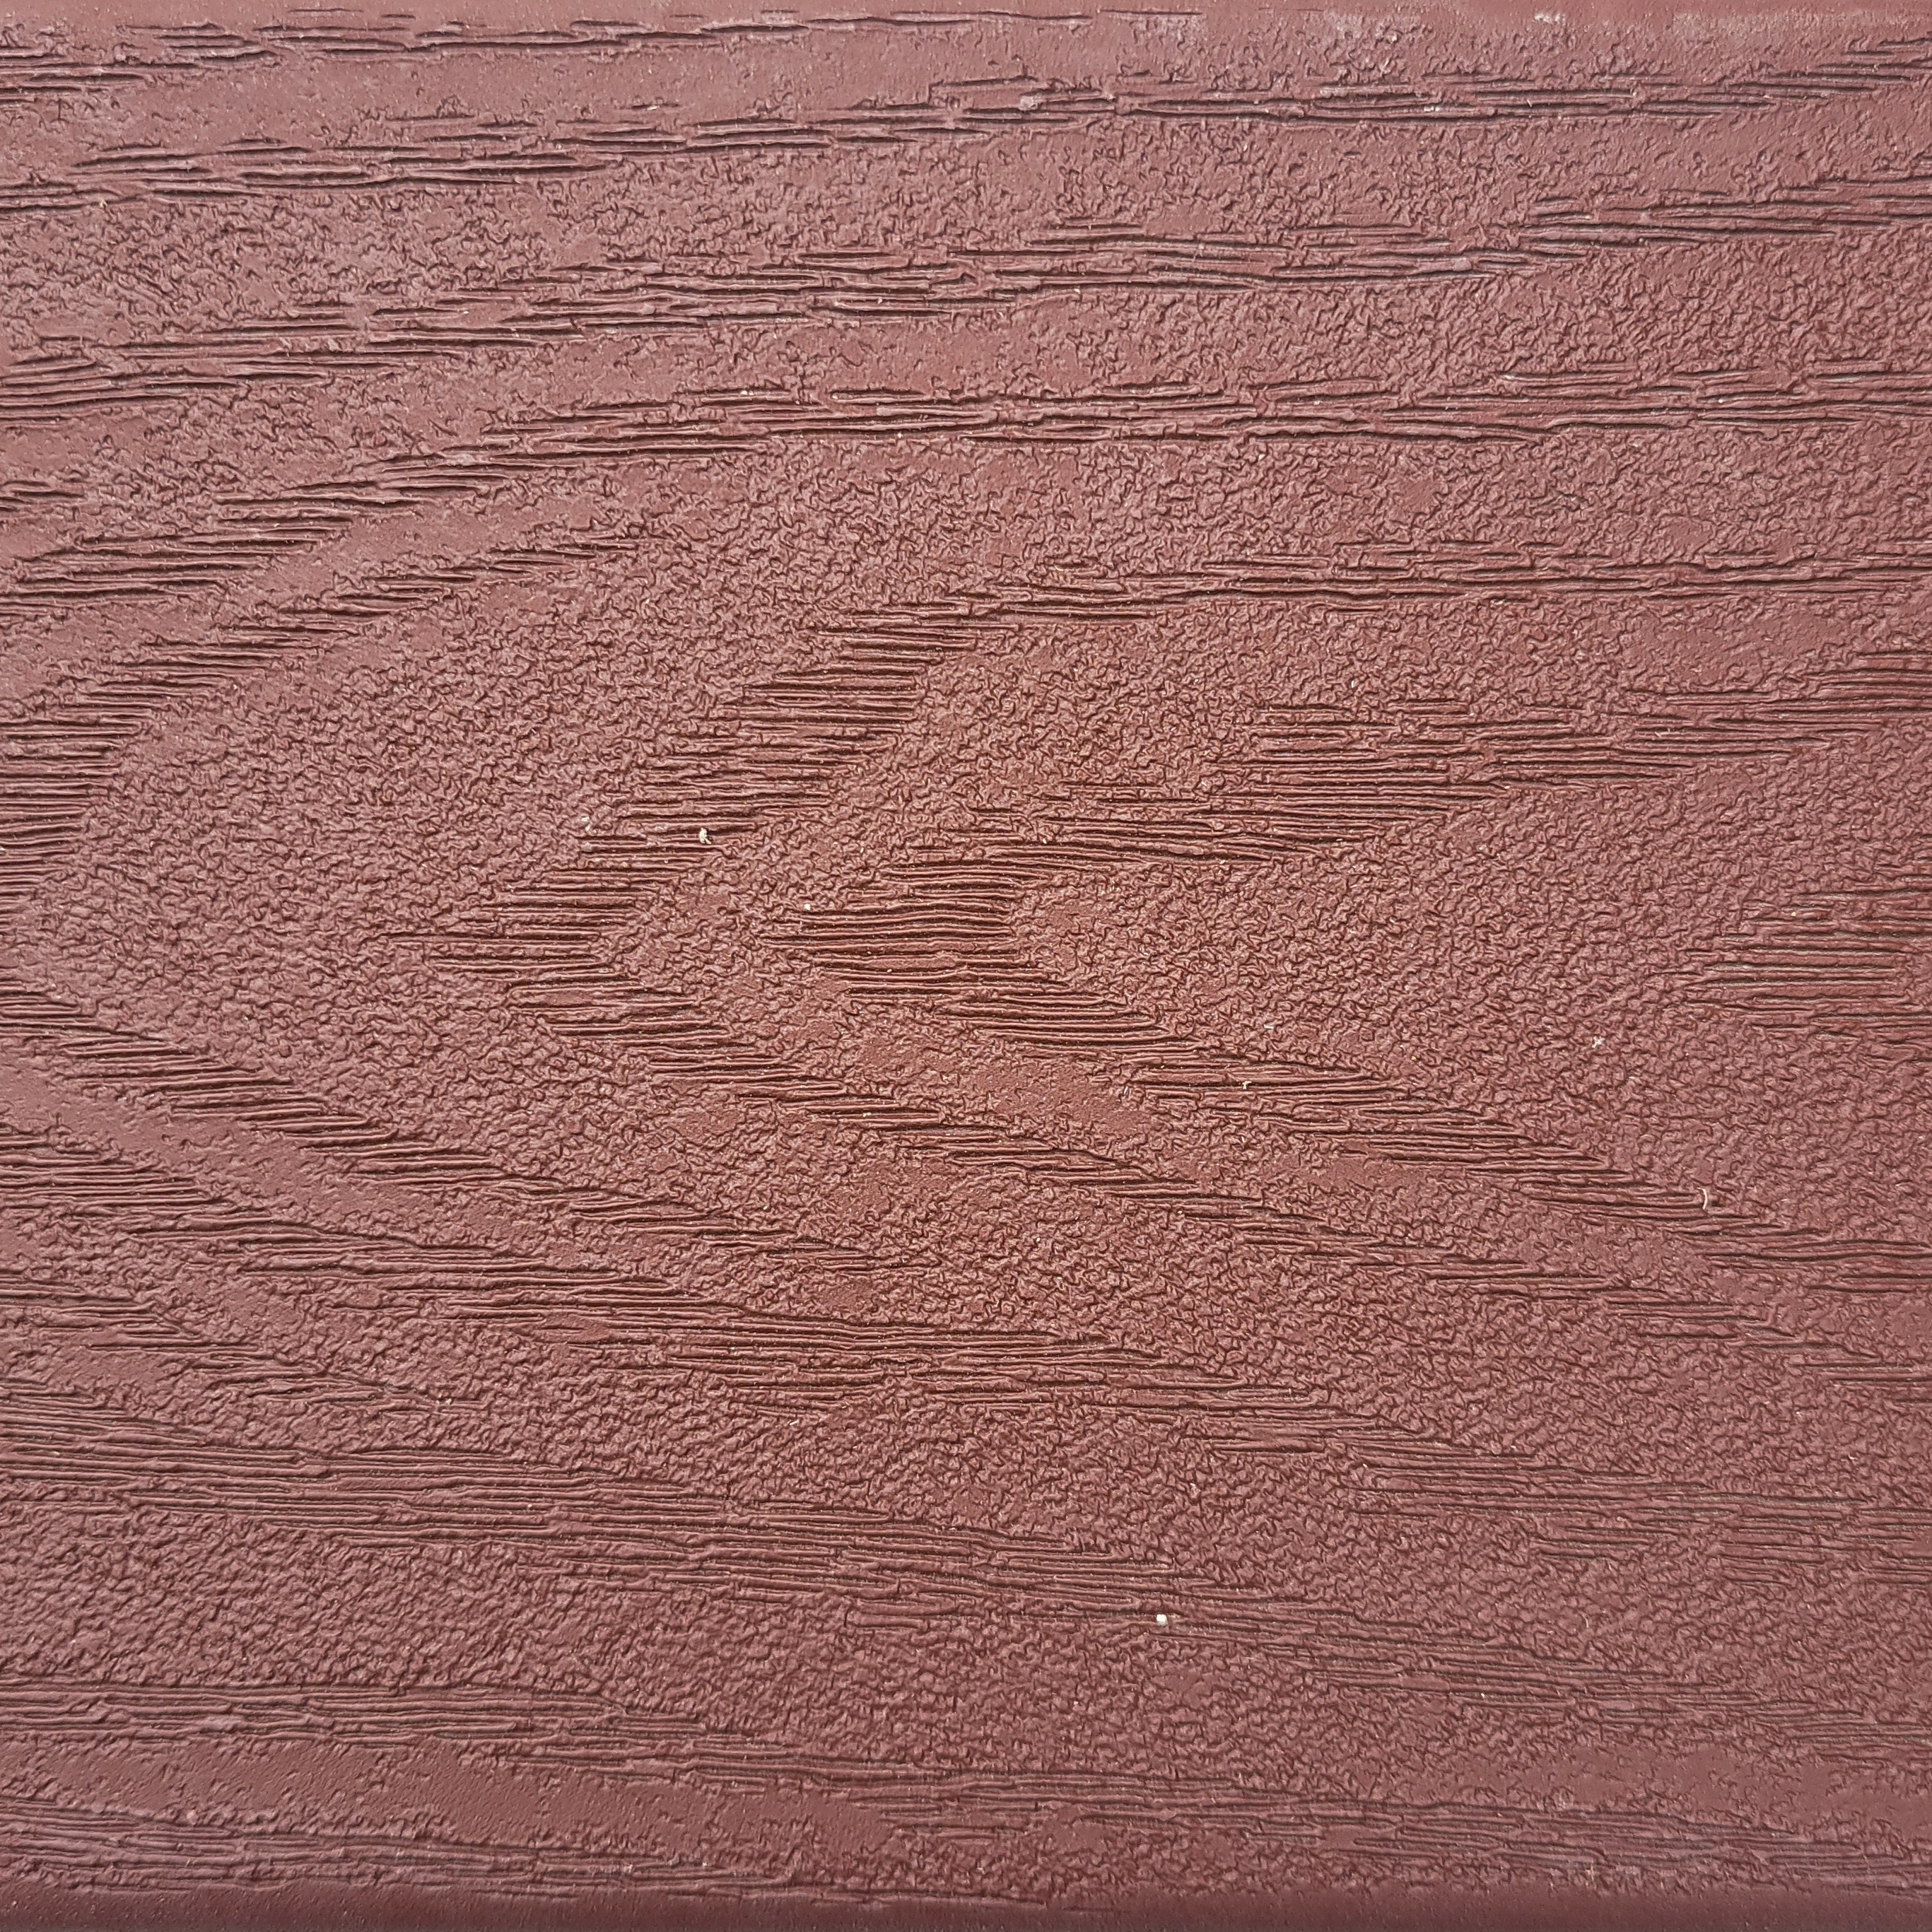 Texture of Trex Madeira Decking